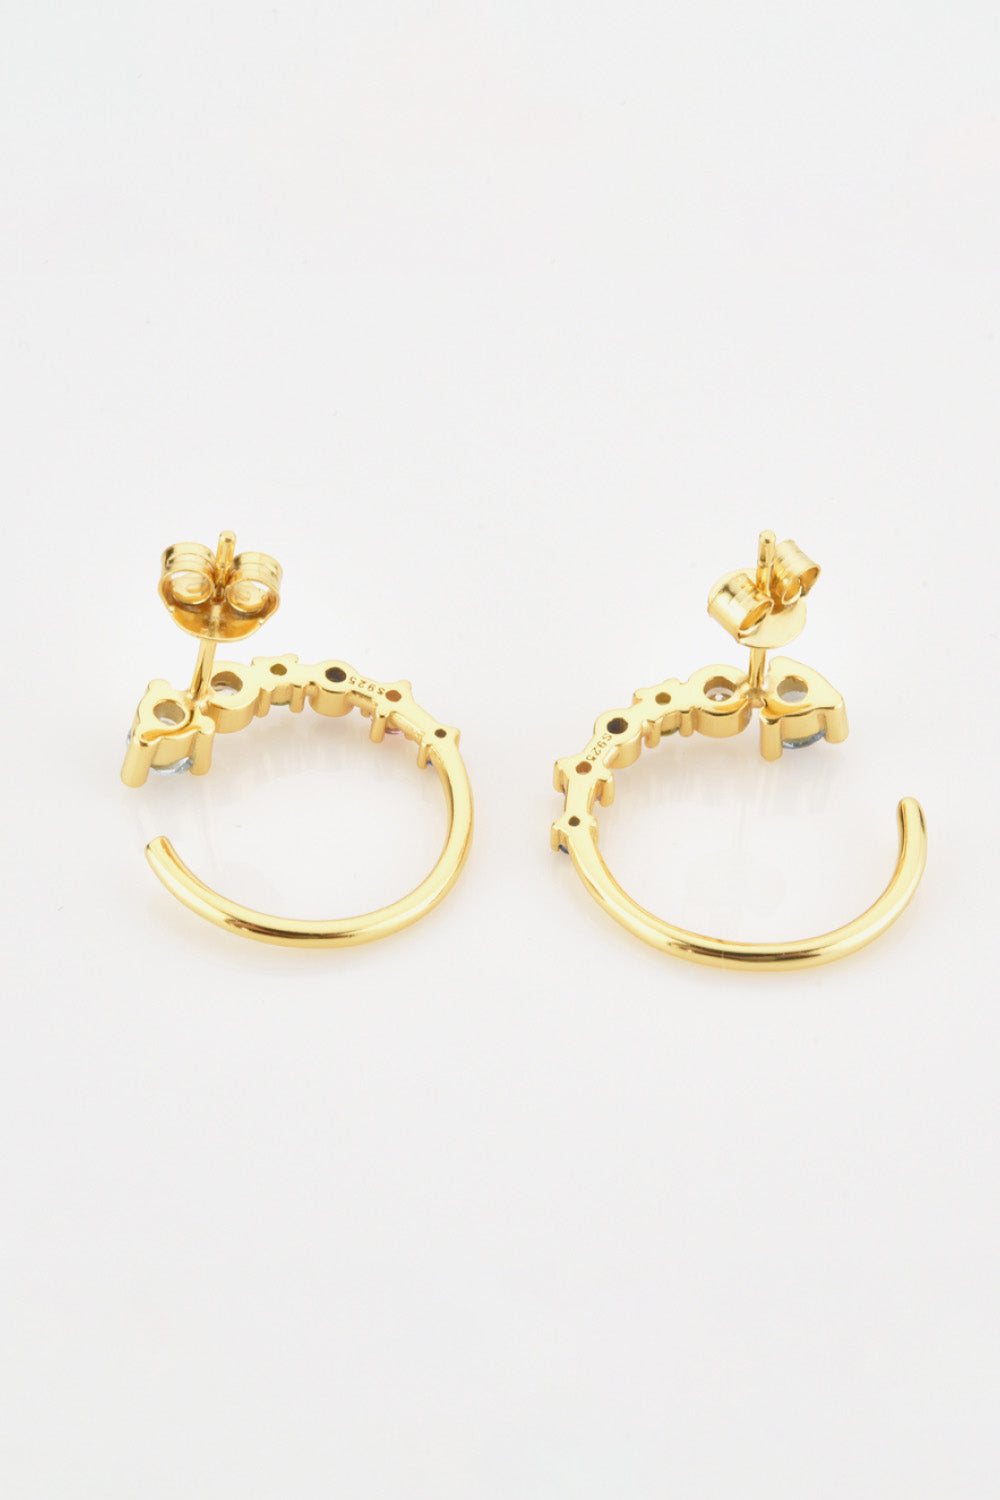 Ocean Princess 18K Gold-Plated 925 Sterling Silver C-Hoop Earrings